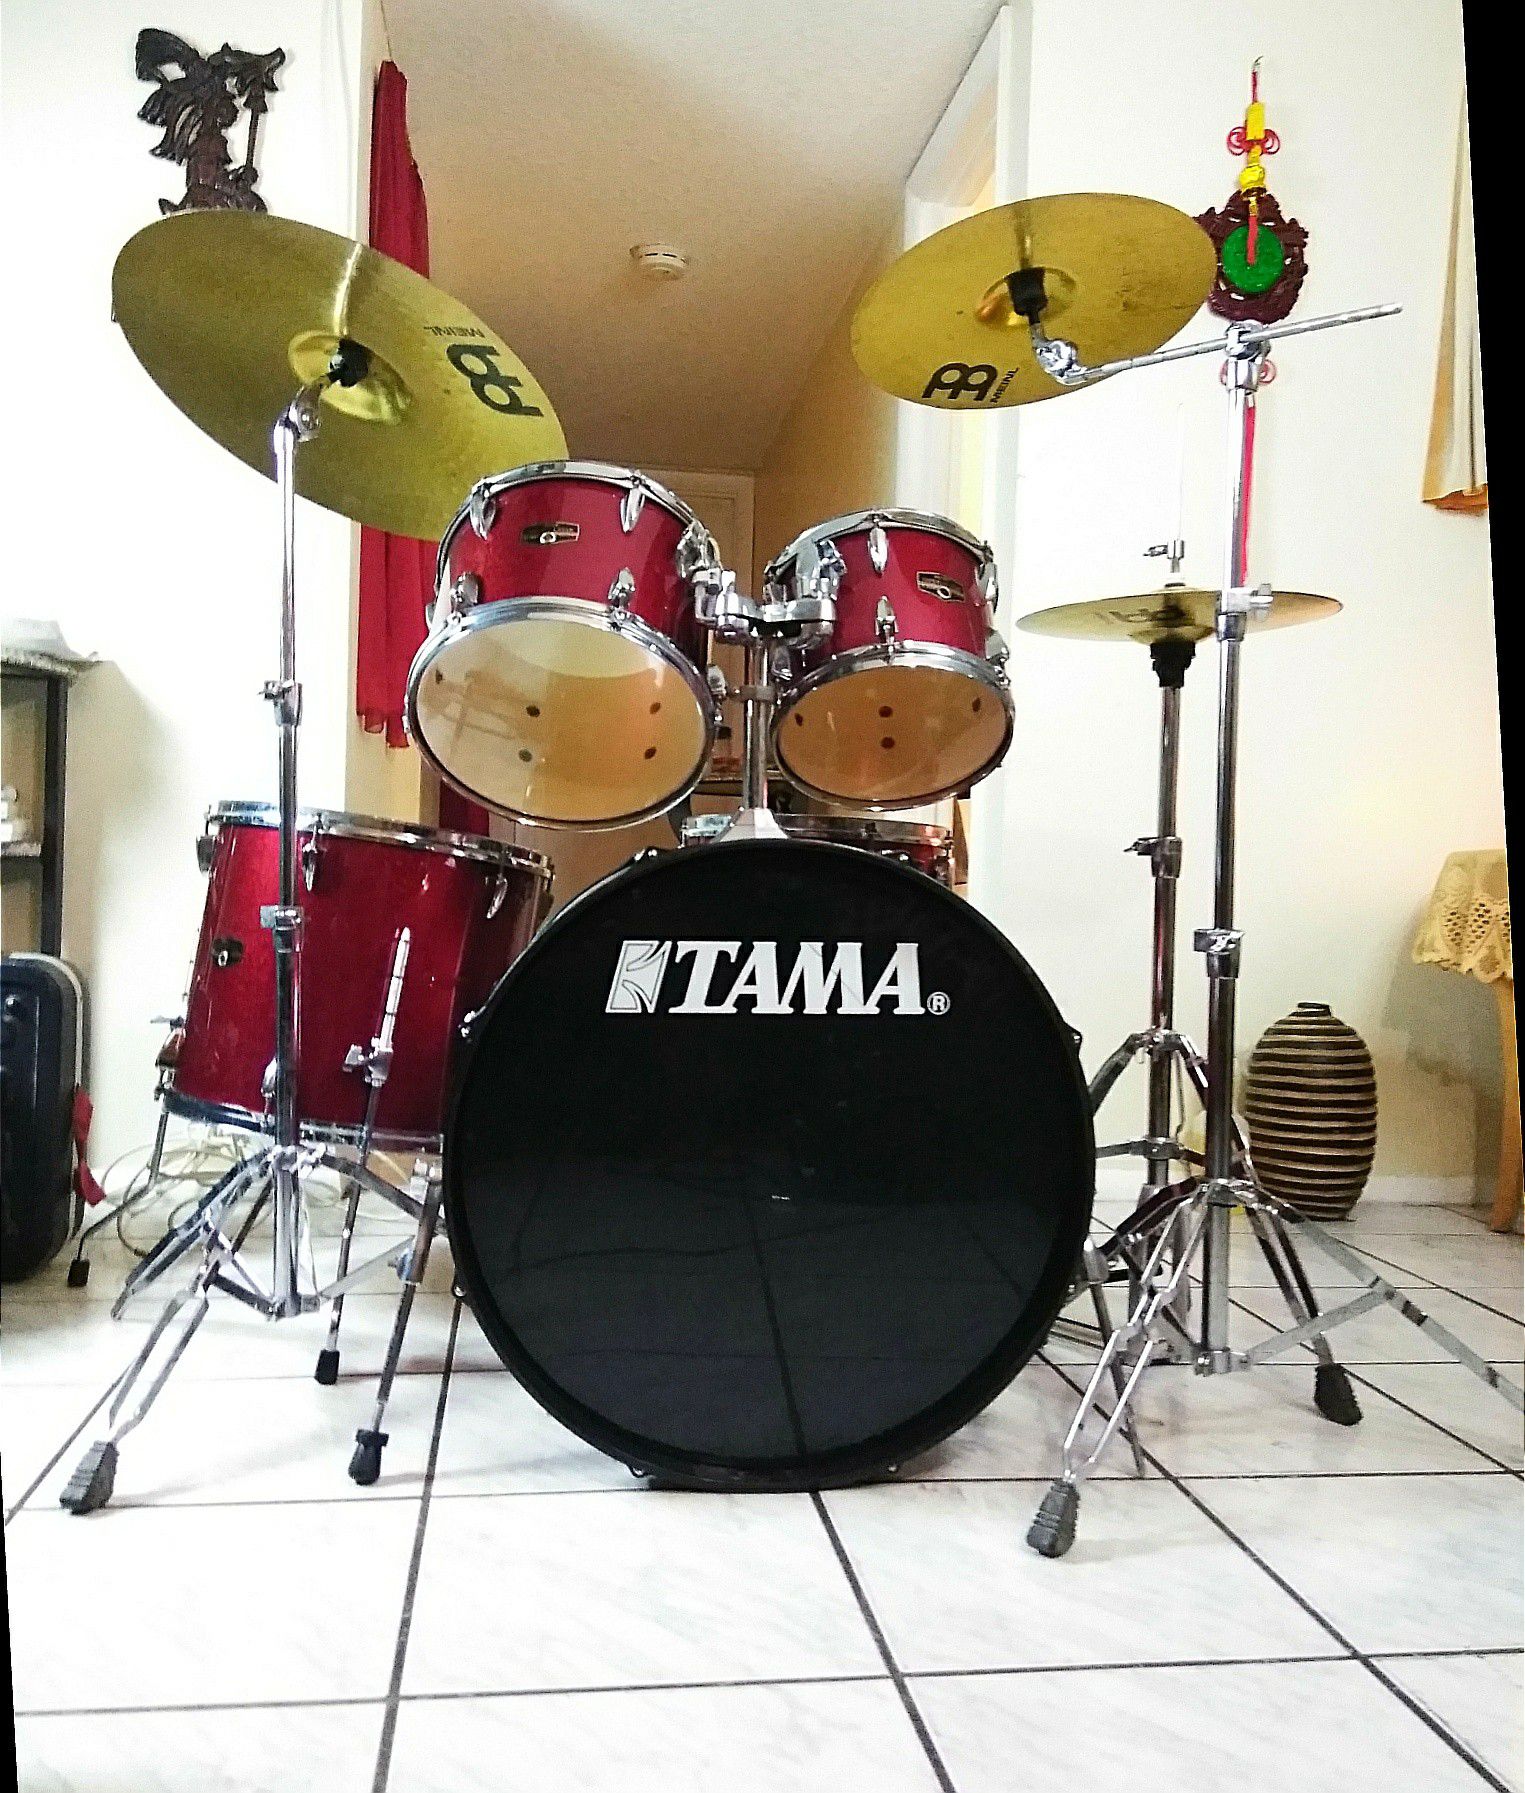 Tama complete drum set. !! $480 or best offer !!